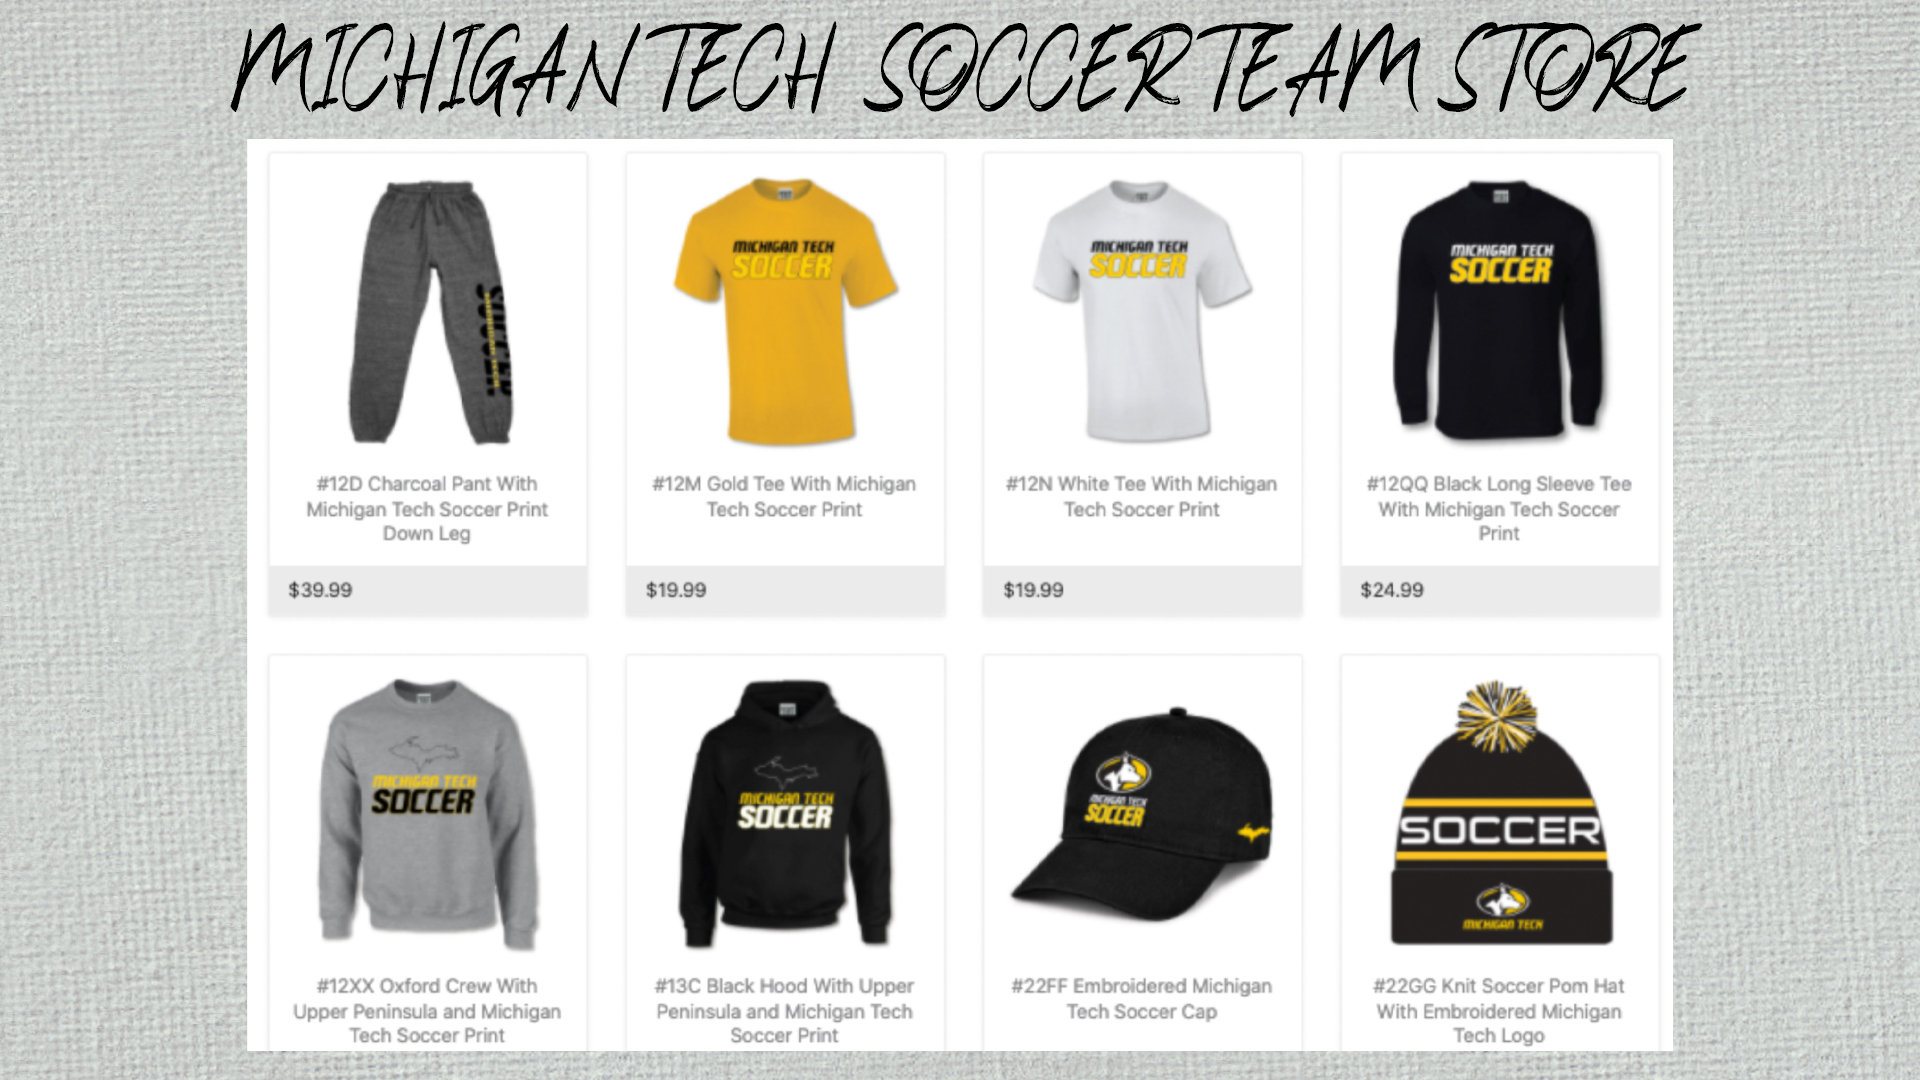 Michigan Tech Soccer Team Shop Now Open